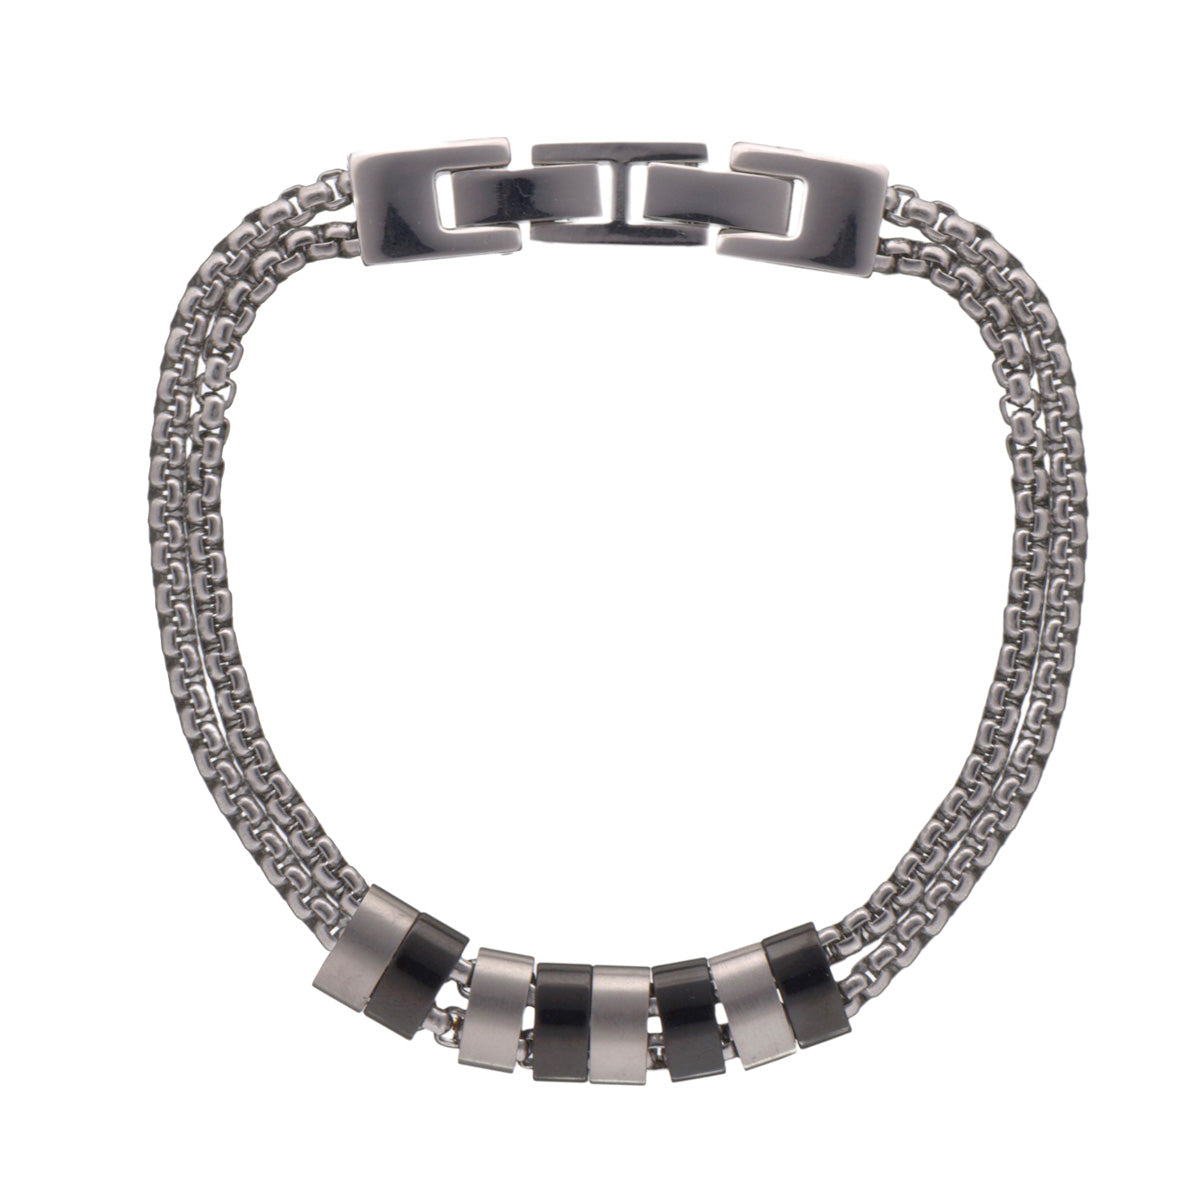 Steel bracelet with metal pieces